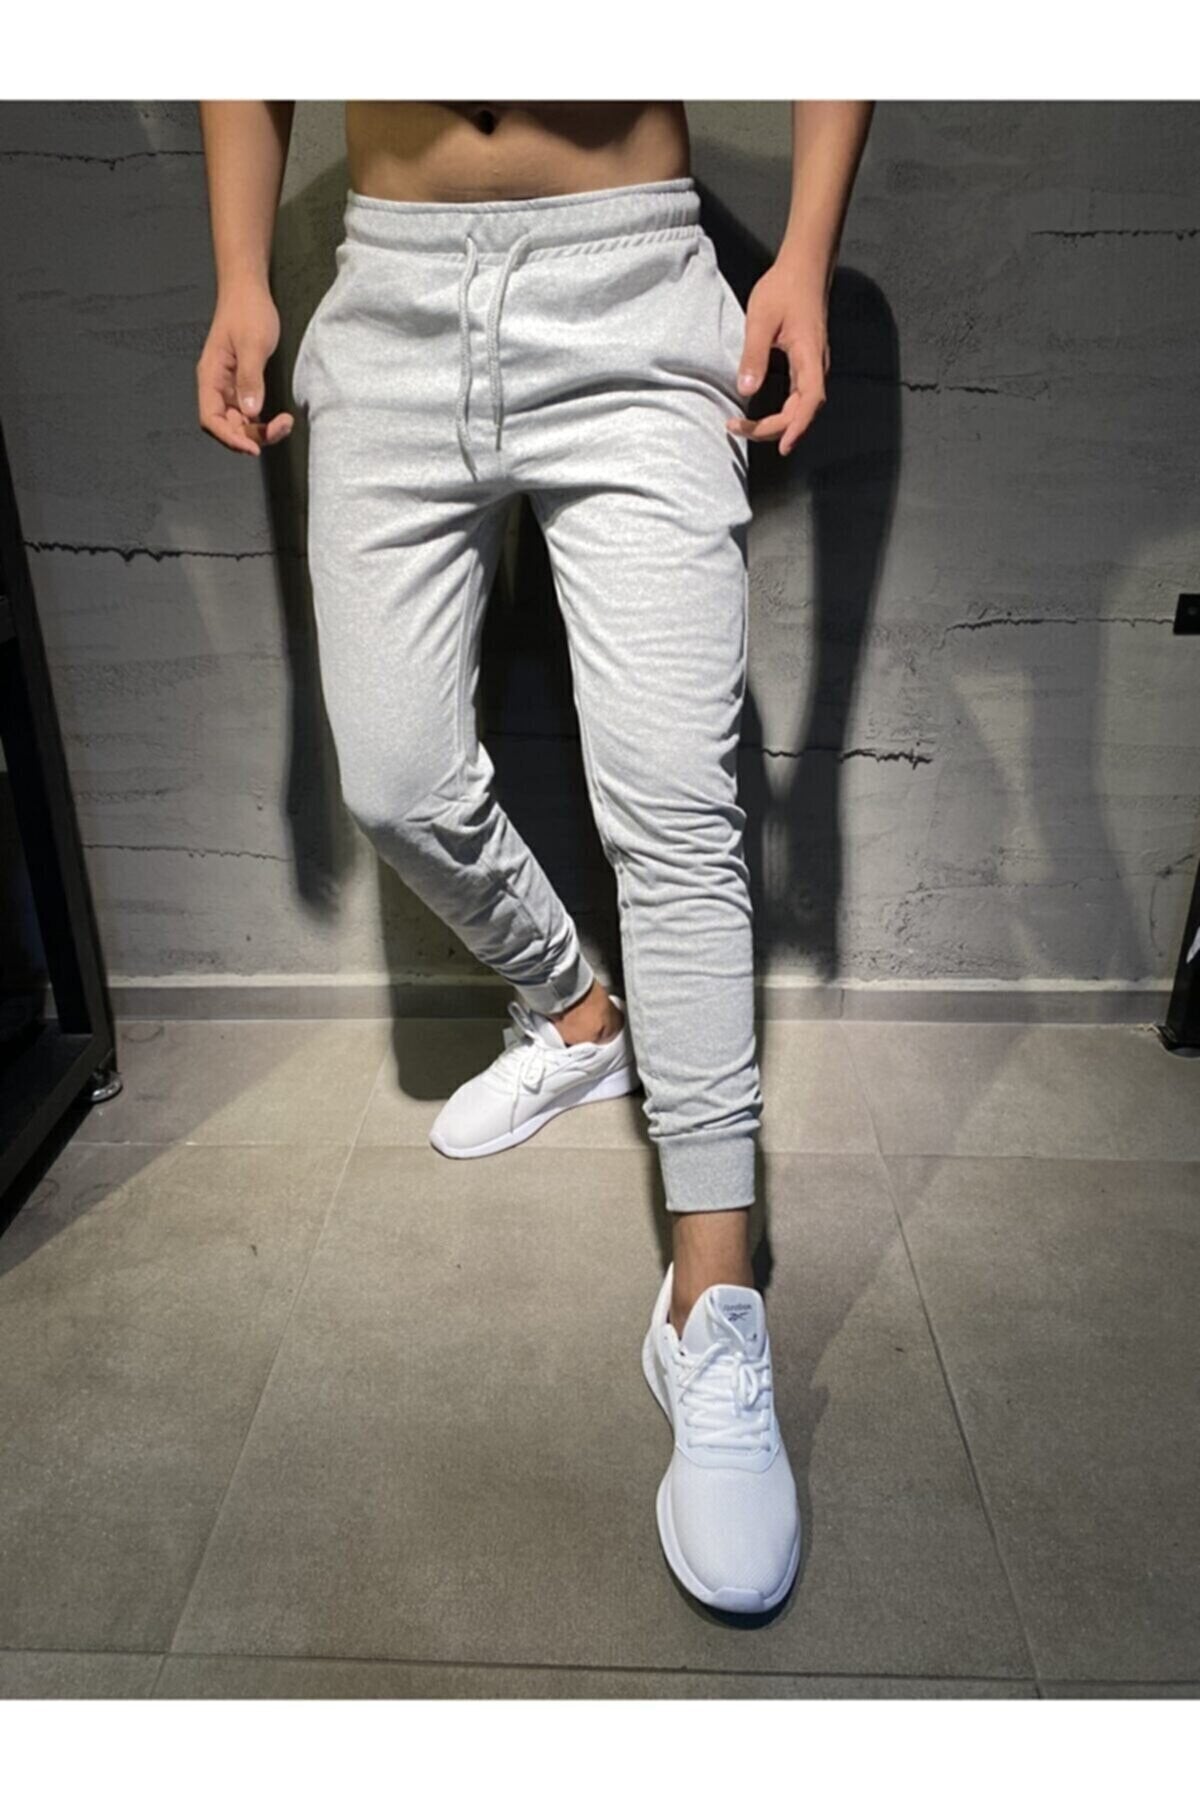 Men's Summer Gray Sweatpants Jogger Slim Fit Cotton Slim Fit